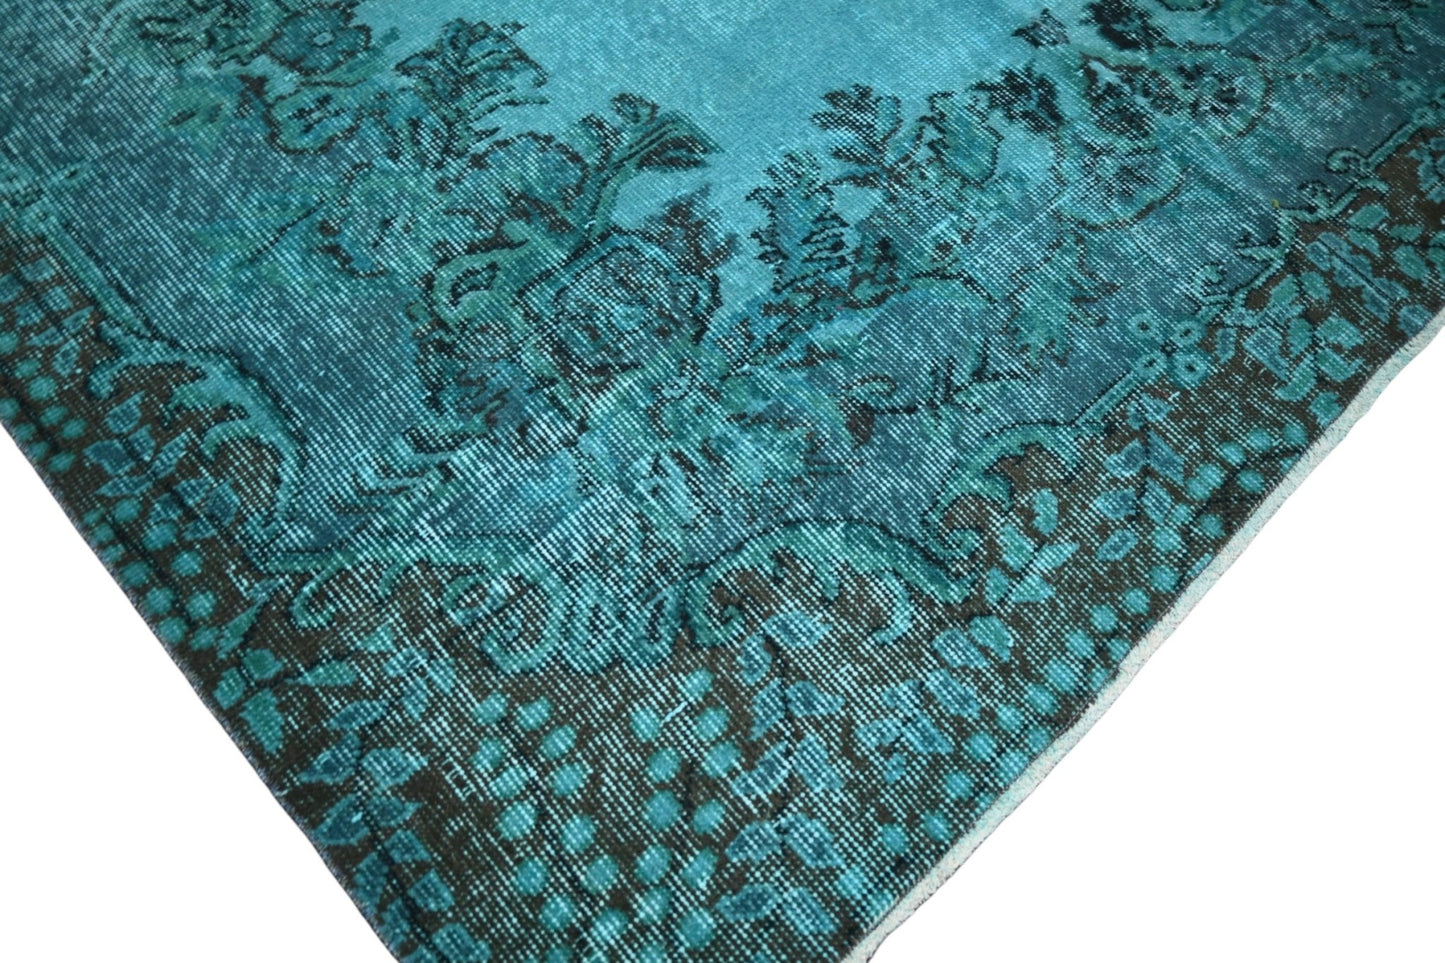 Turquoise vintage vloerkleed - E802 - Lavinta